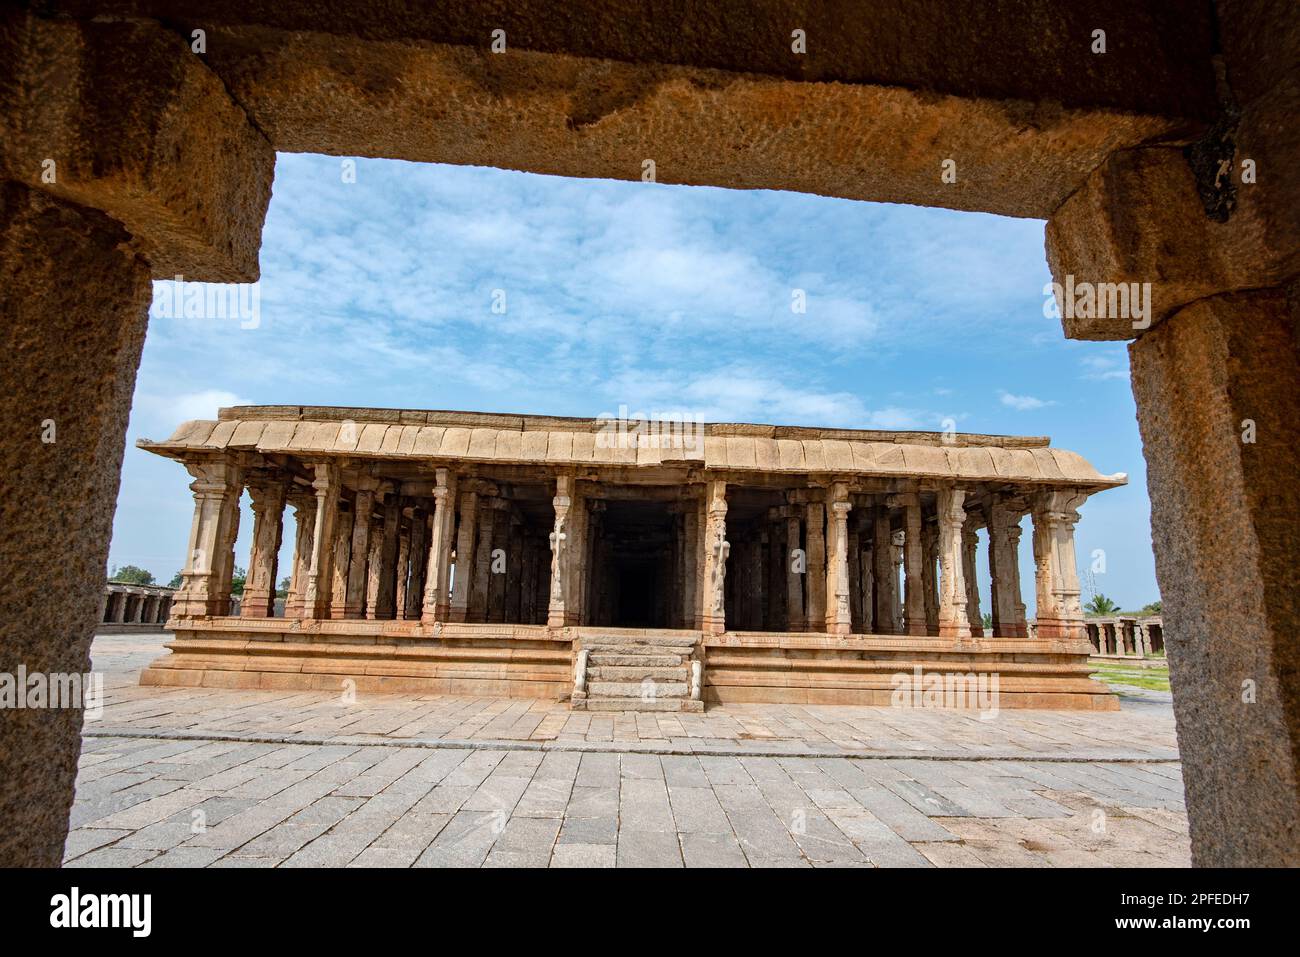 Templo Pattabhirama en Hampi dedicado al Señor Ram. Hampi, la capital del antiguo Imperio Vijayanagara, es Patrimonio de la Humanidad de la UNESCO. Foto de stock